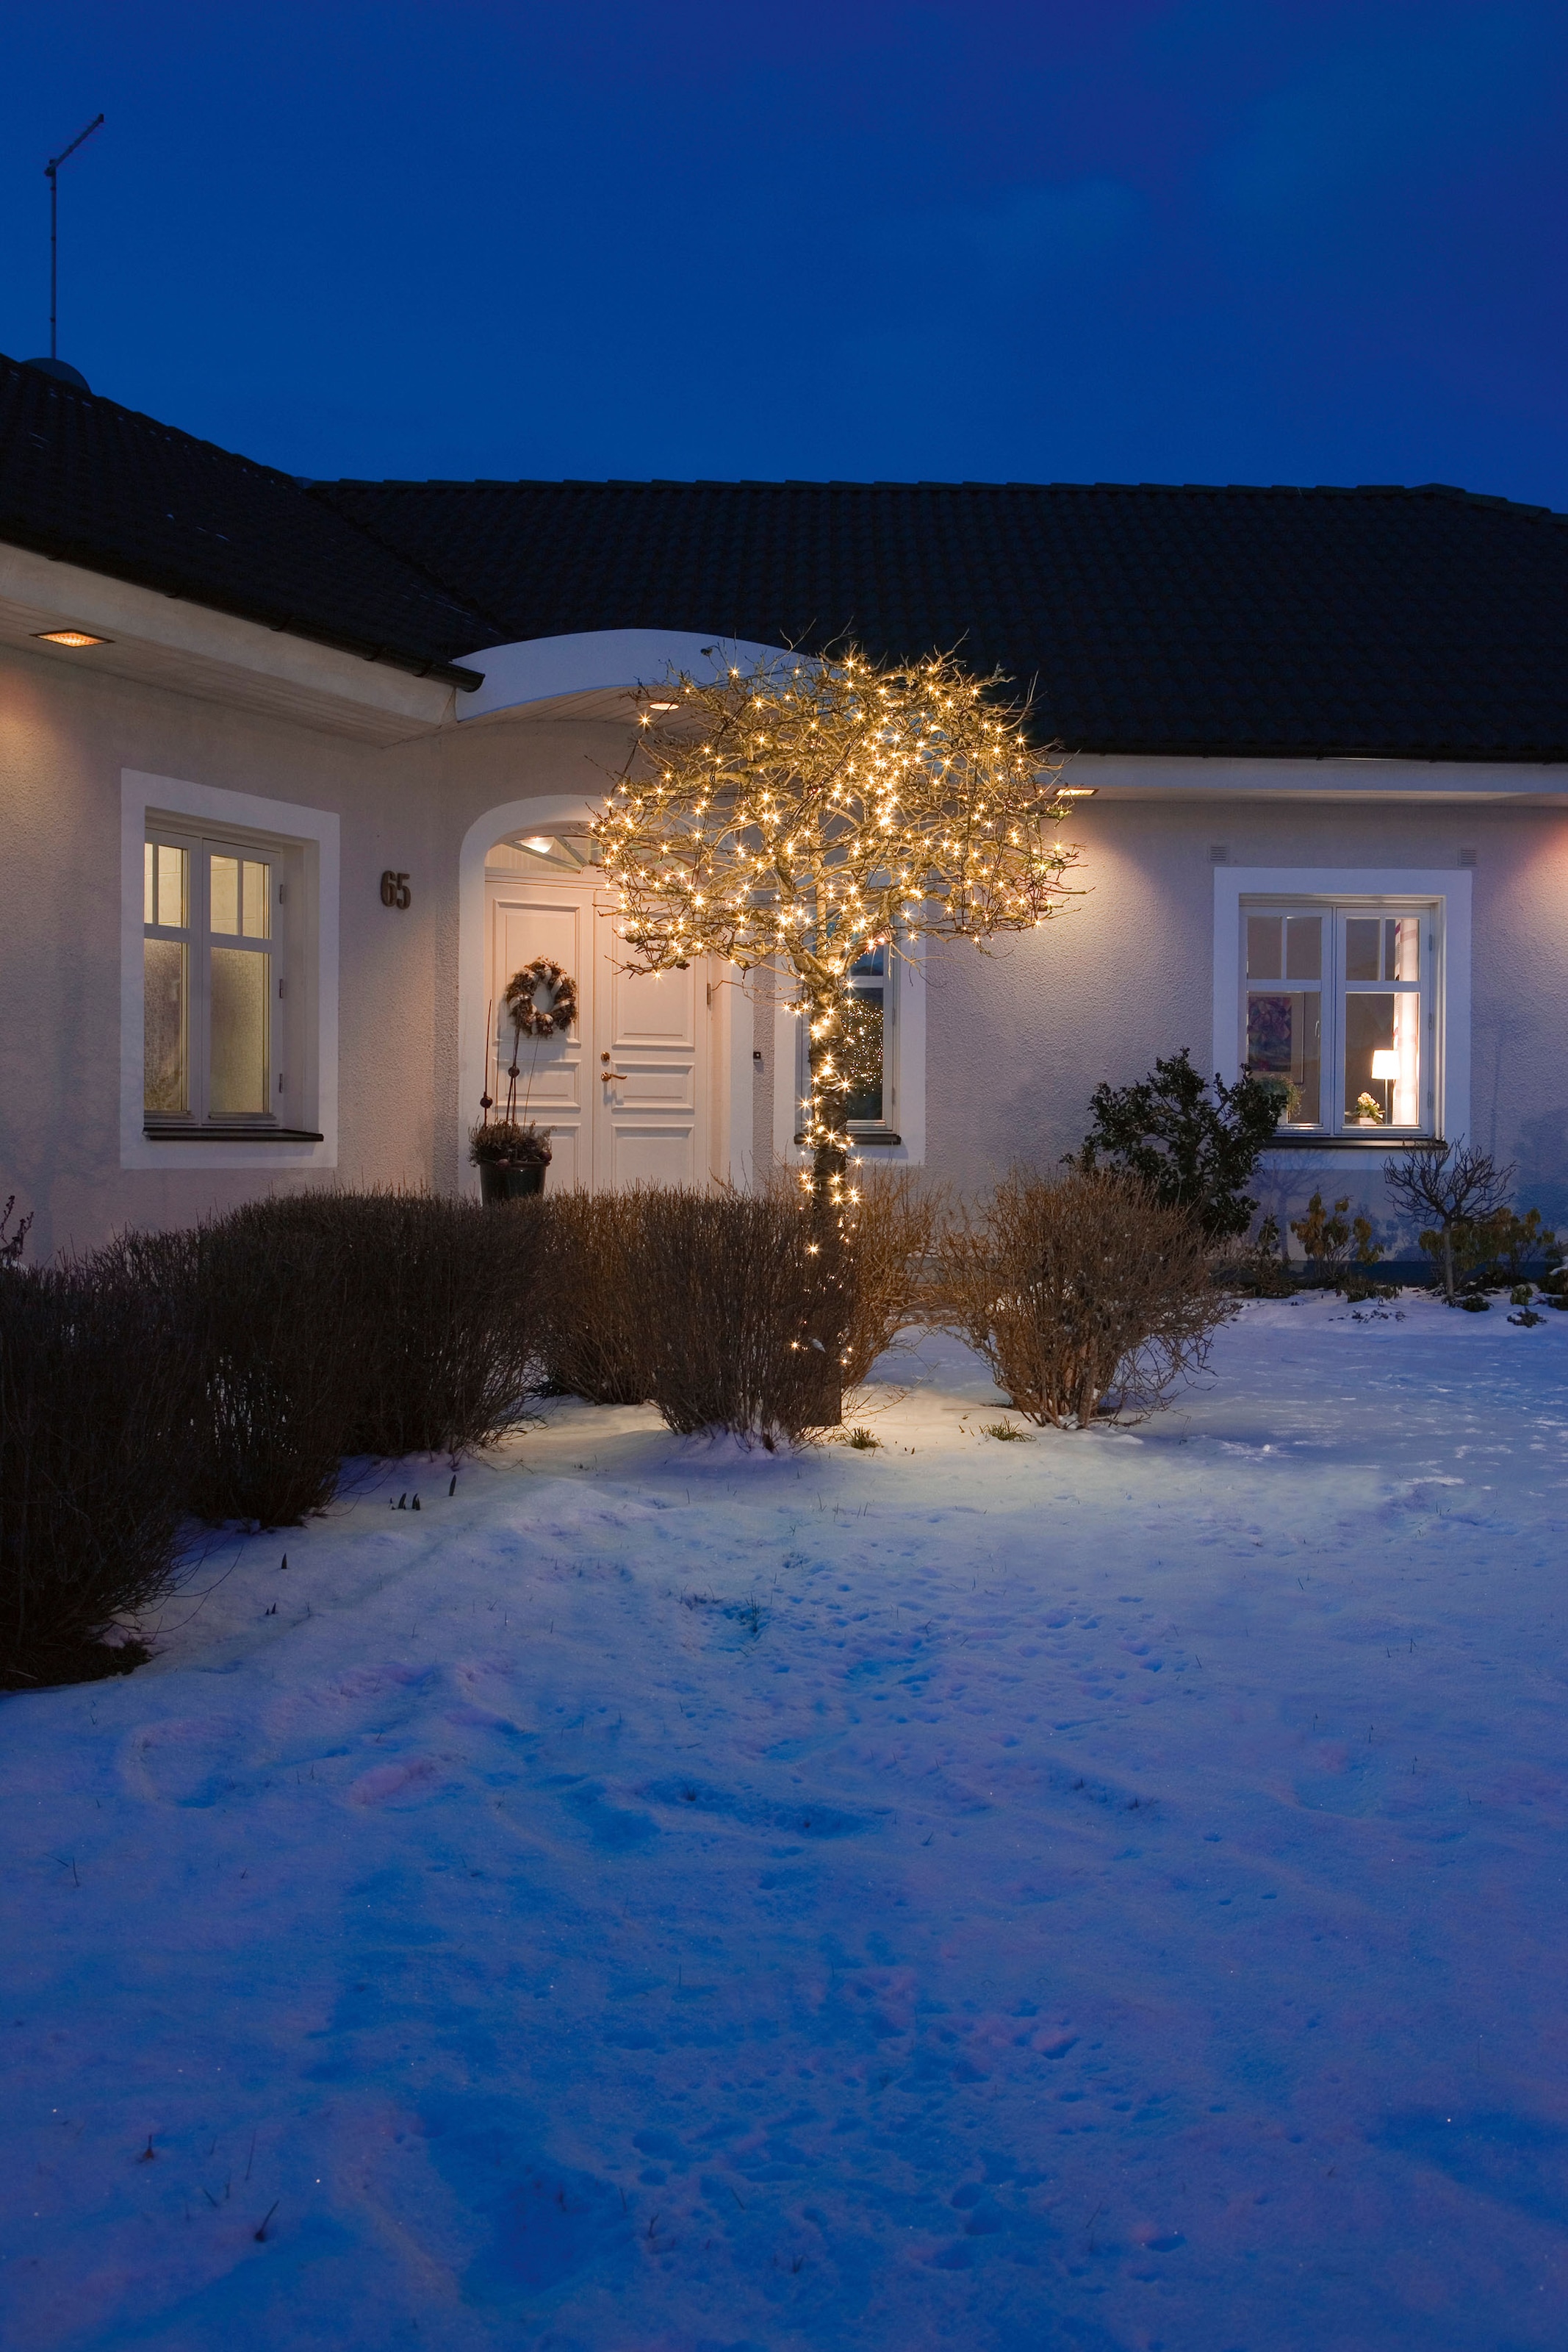 KONSTSMIDE LED-Lichterkette »Weihnachtsdeko aussen«, 120 St.-flammig, LED Lichterkette, mit Glimmereffekt, 120 bernsteinfarbene Dioden